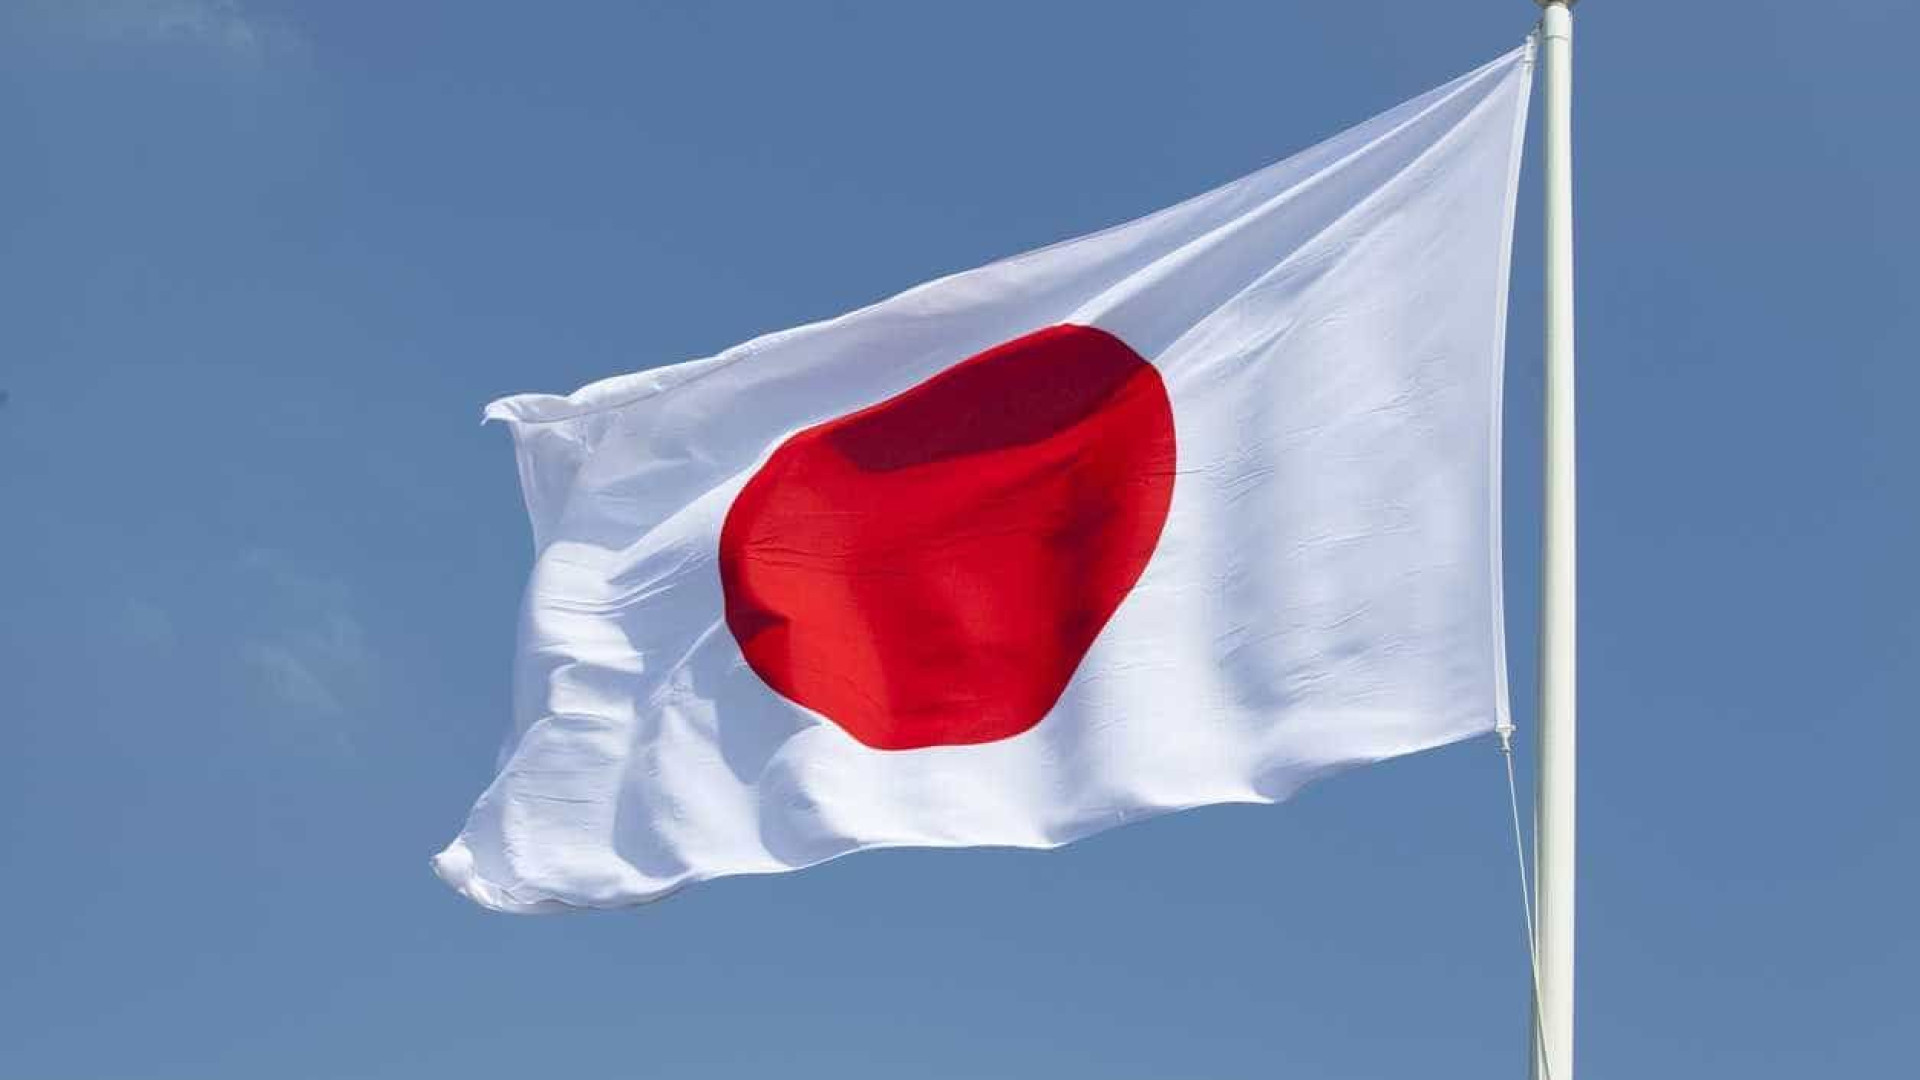 Mulheres solteiras são fardo para contribuintes japoneses, diz deputado